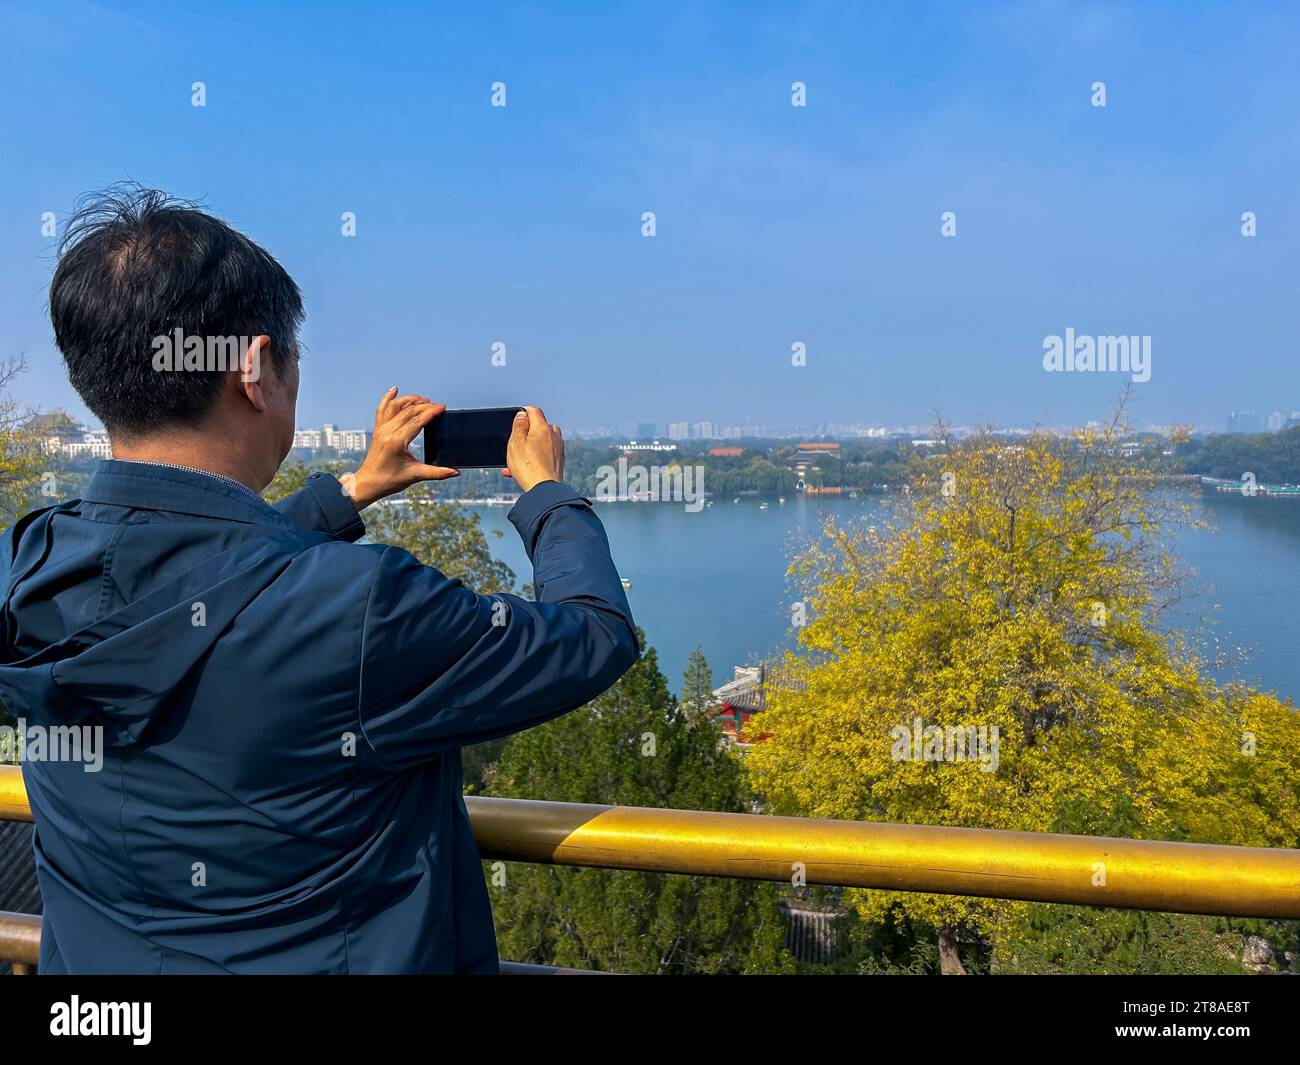 Peking, China, chinesische Touristen besuchen Urban Park, 'Beihai Park', Mann von hinten, fotografieren Landschaft, See Stockfoto